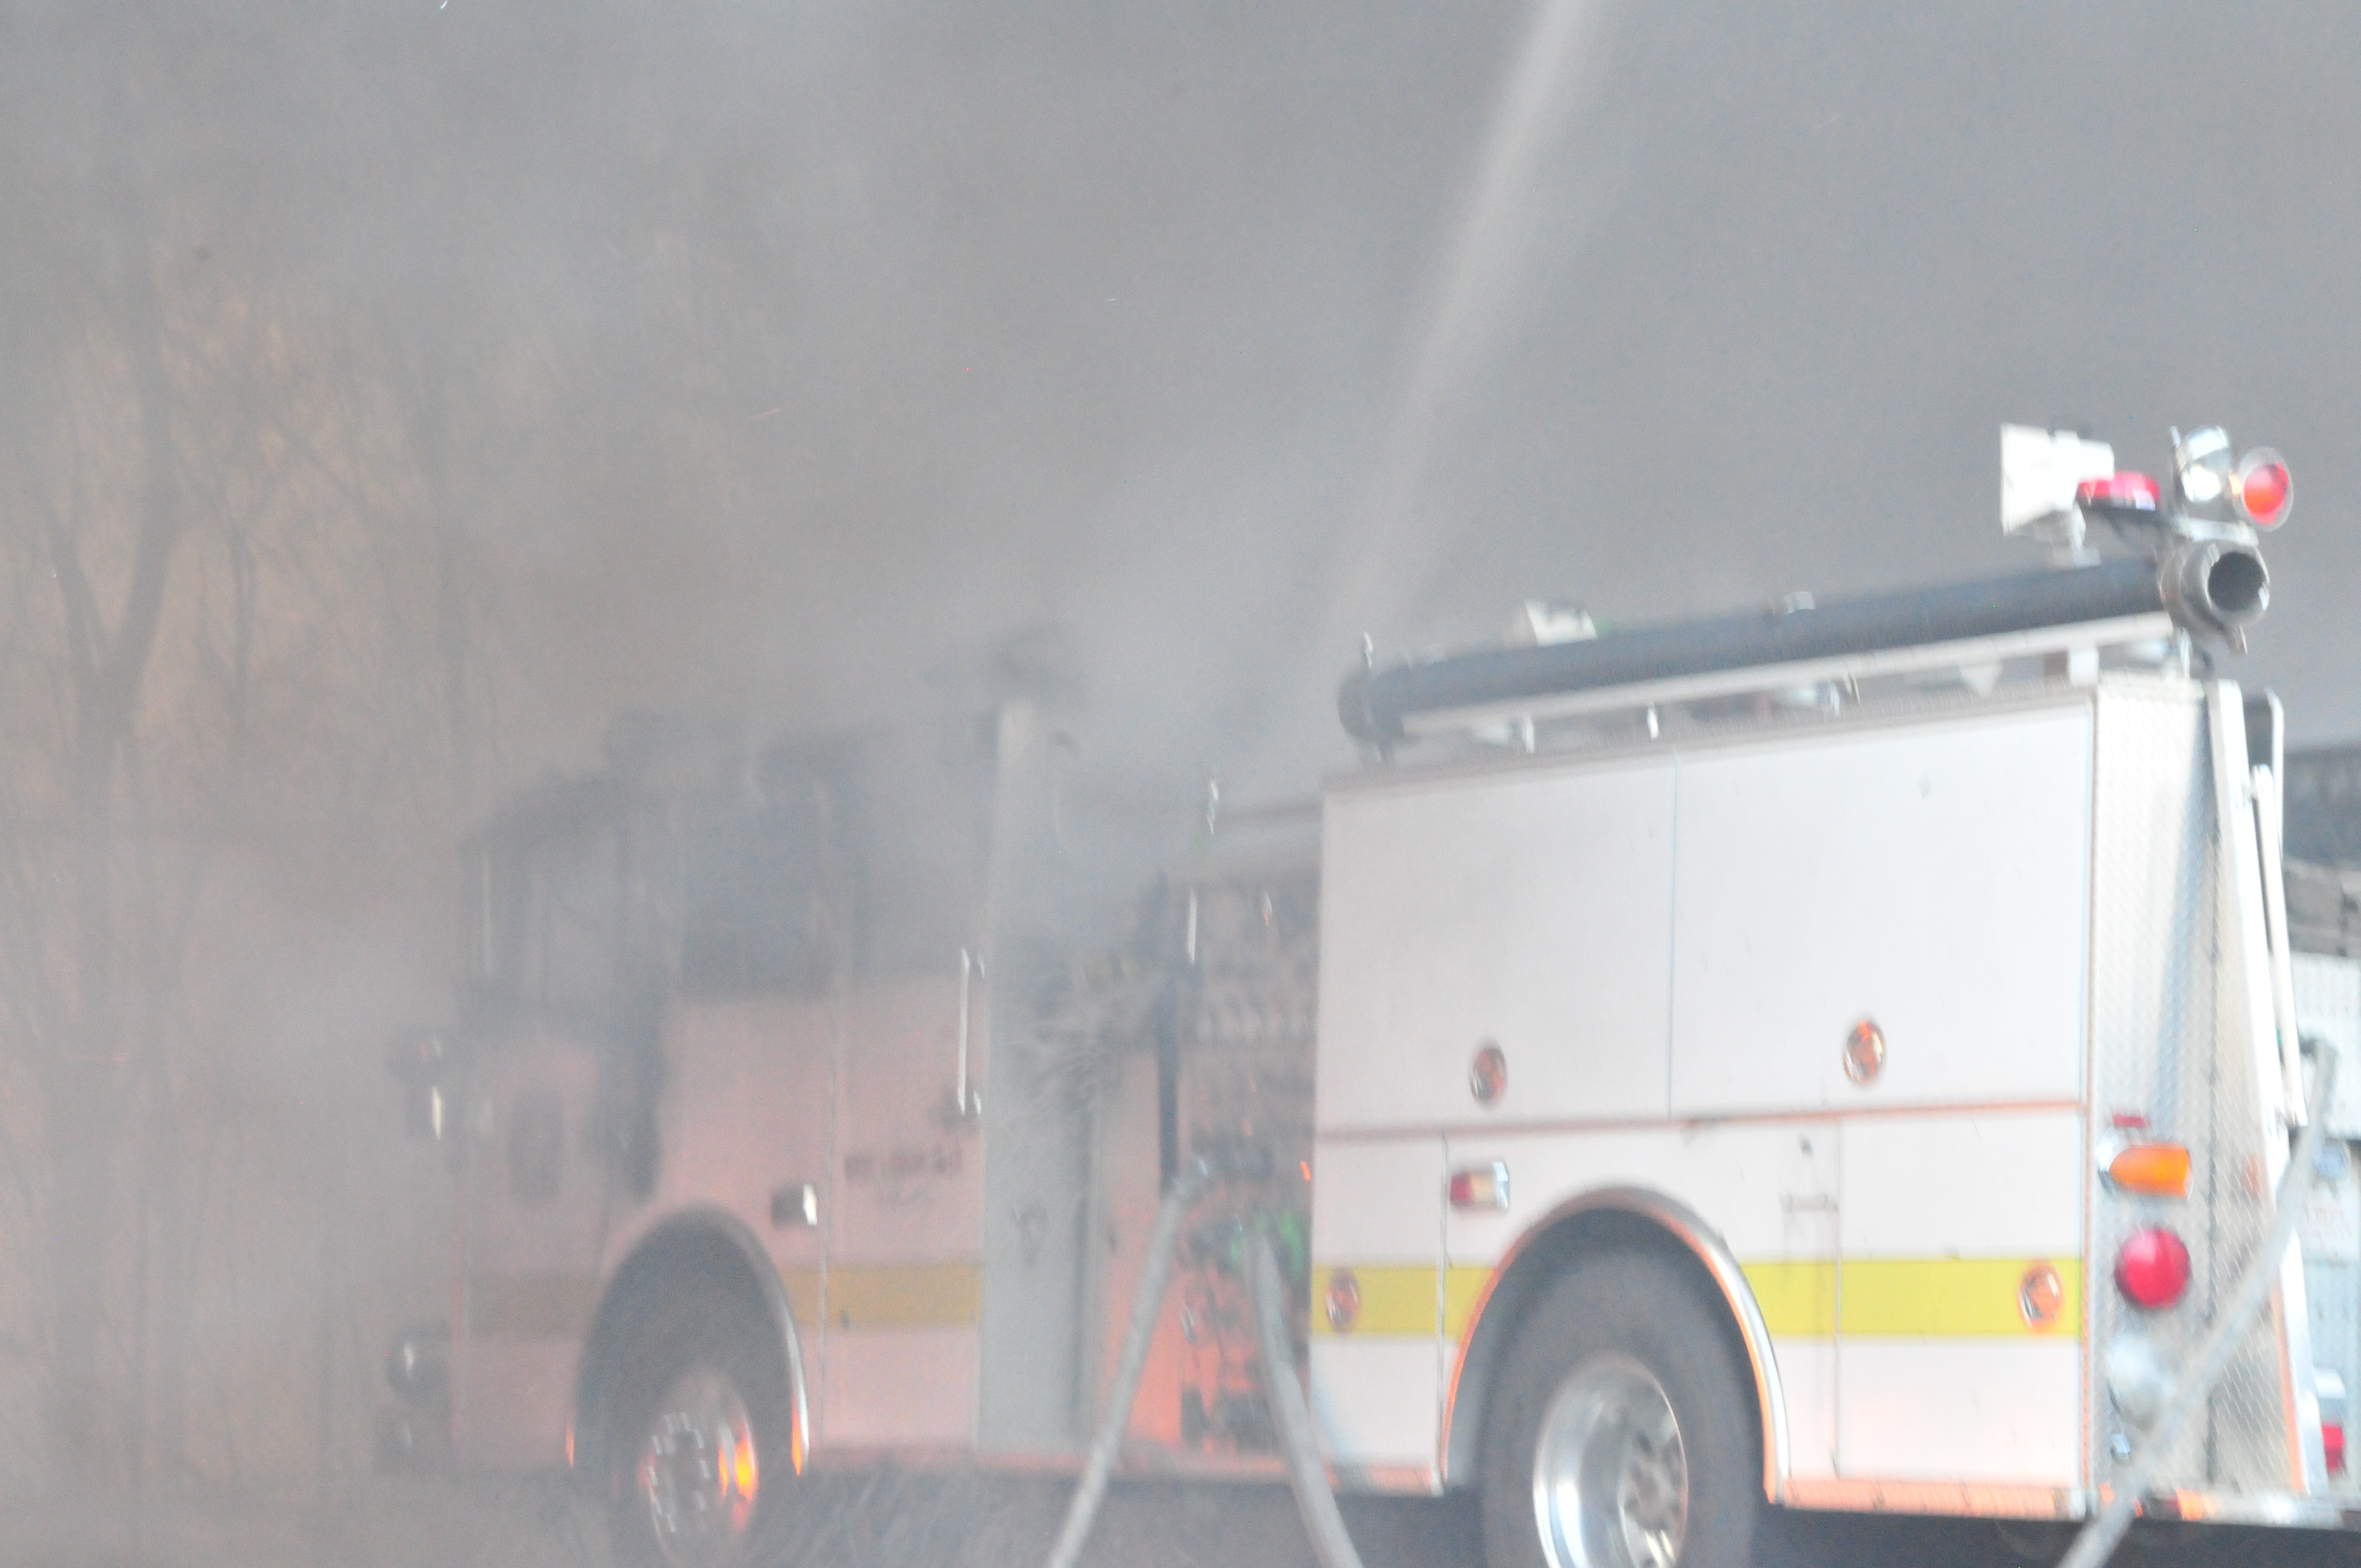 Industrial park fire destroys fire trucks